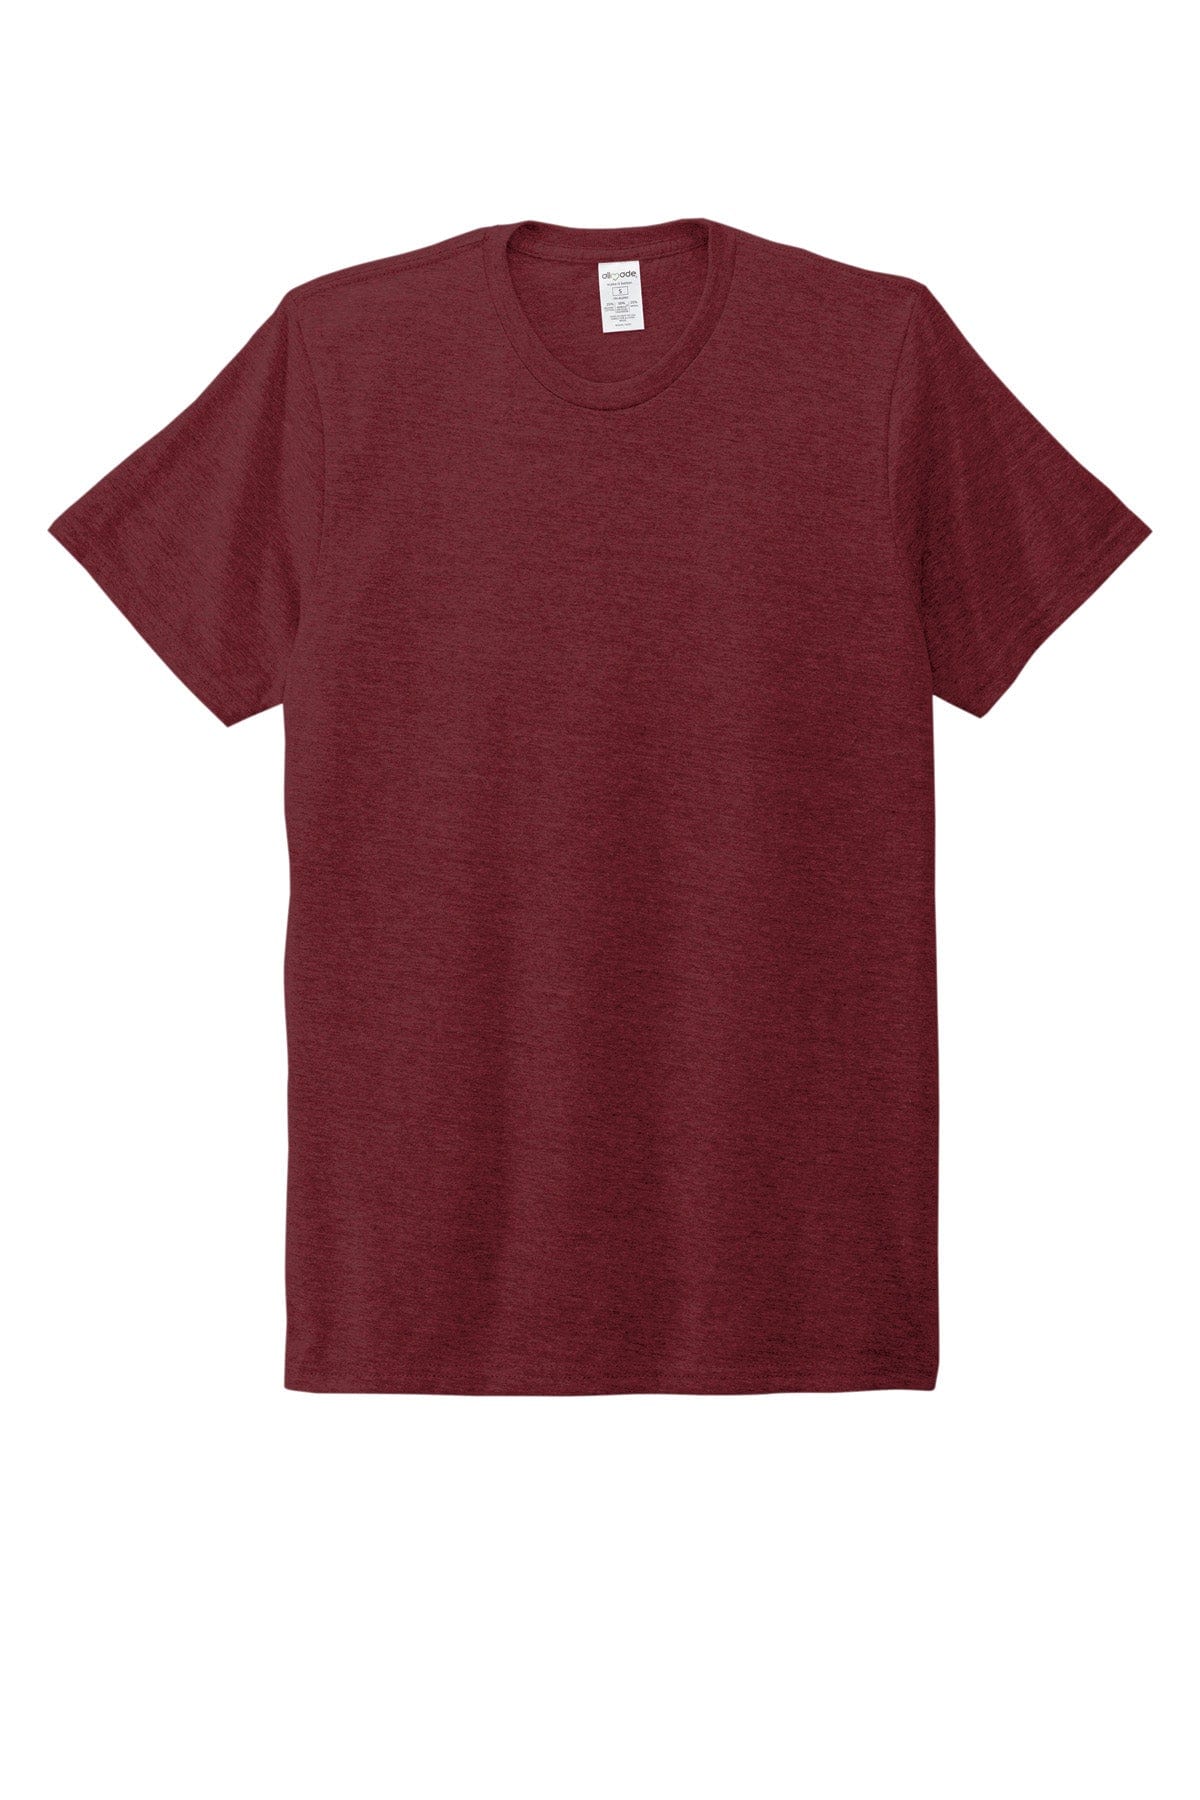 XS / Vino Red Custom Allmade Unisex Tri-Blend T-Shirt